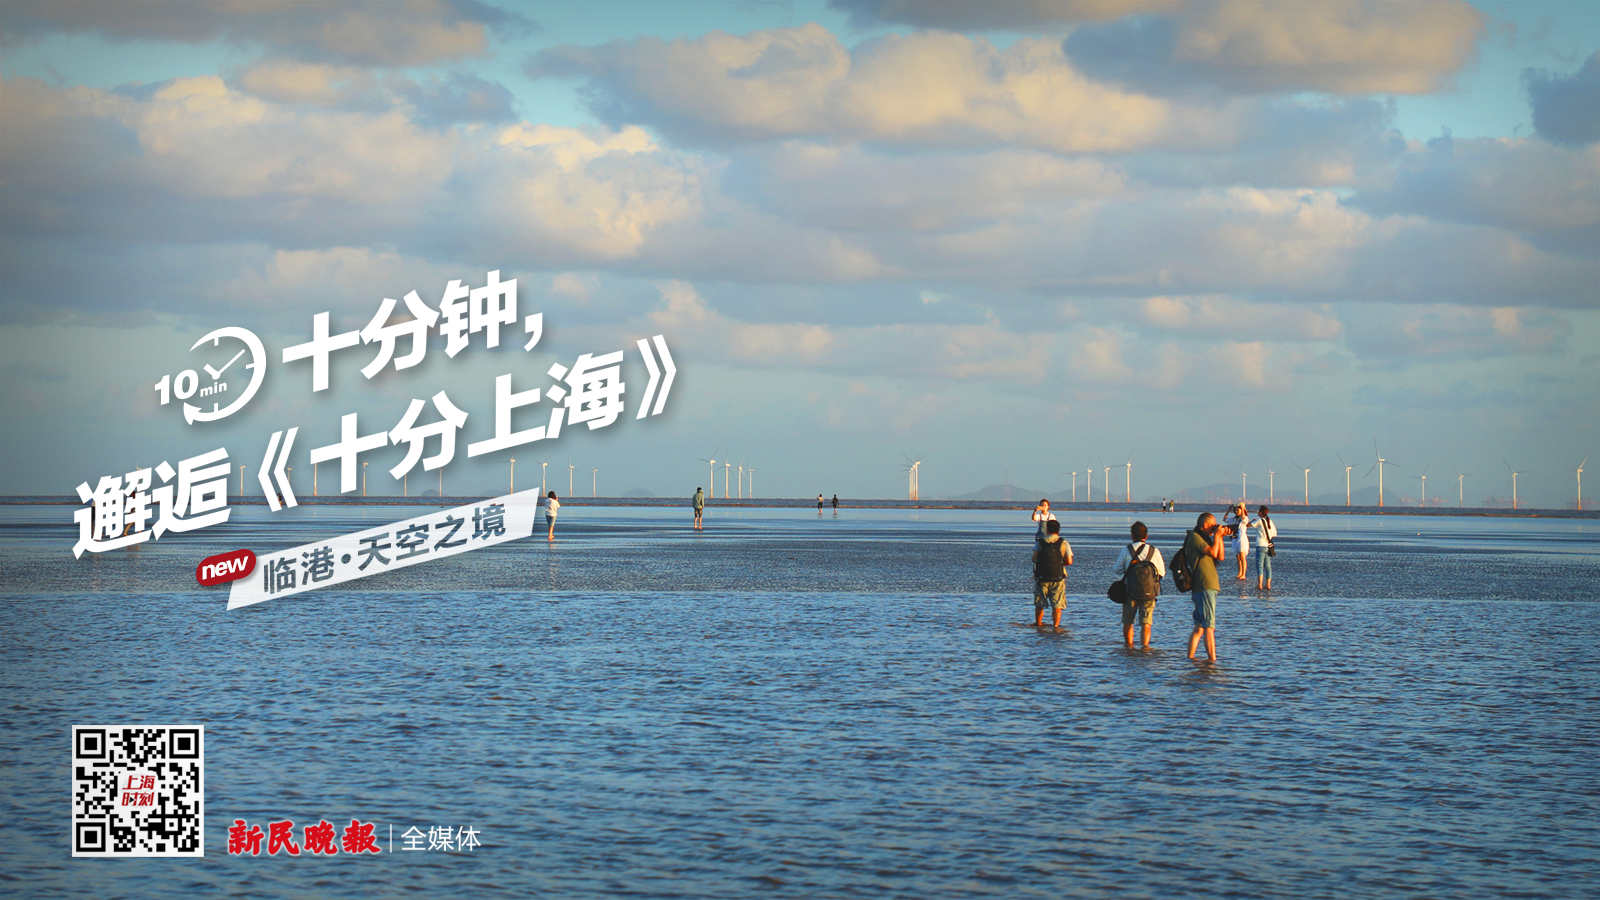 十分上海丨被称为上海的“茶卡盐湖” 这里是临港“天空之境”